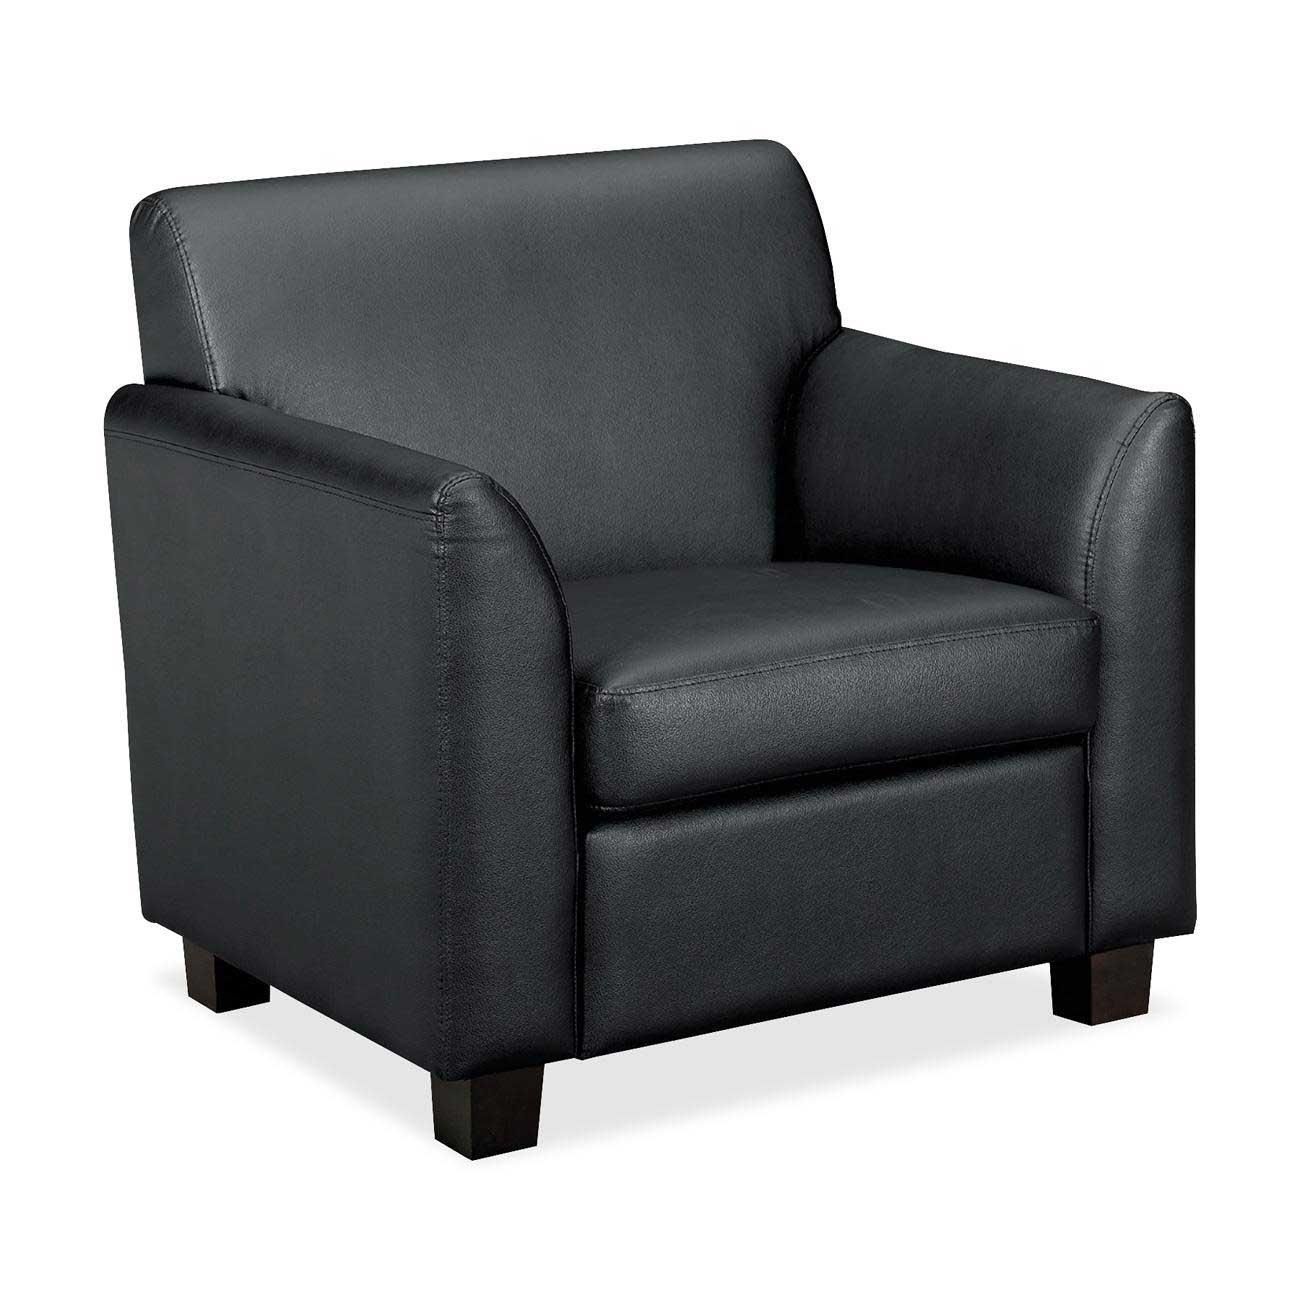 Office Sofa Chair 140 Decor Ideas For Office Sofa Chair – Cryomats Intended For Office Sofas And Chairs (Photo 18 of 20)